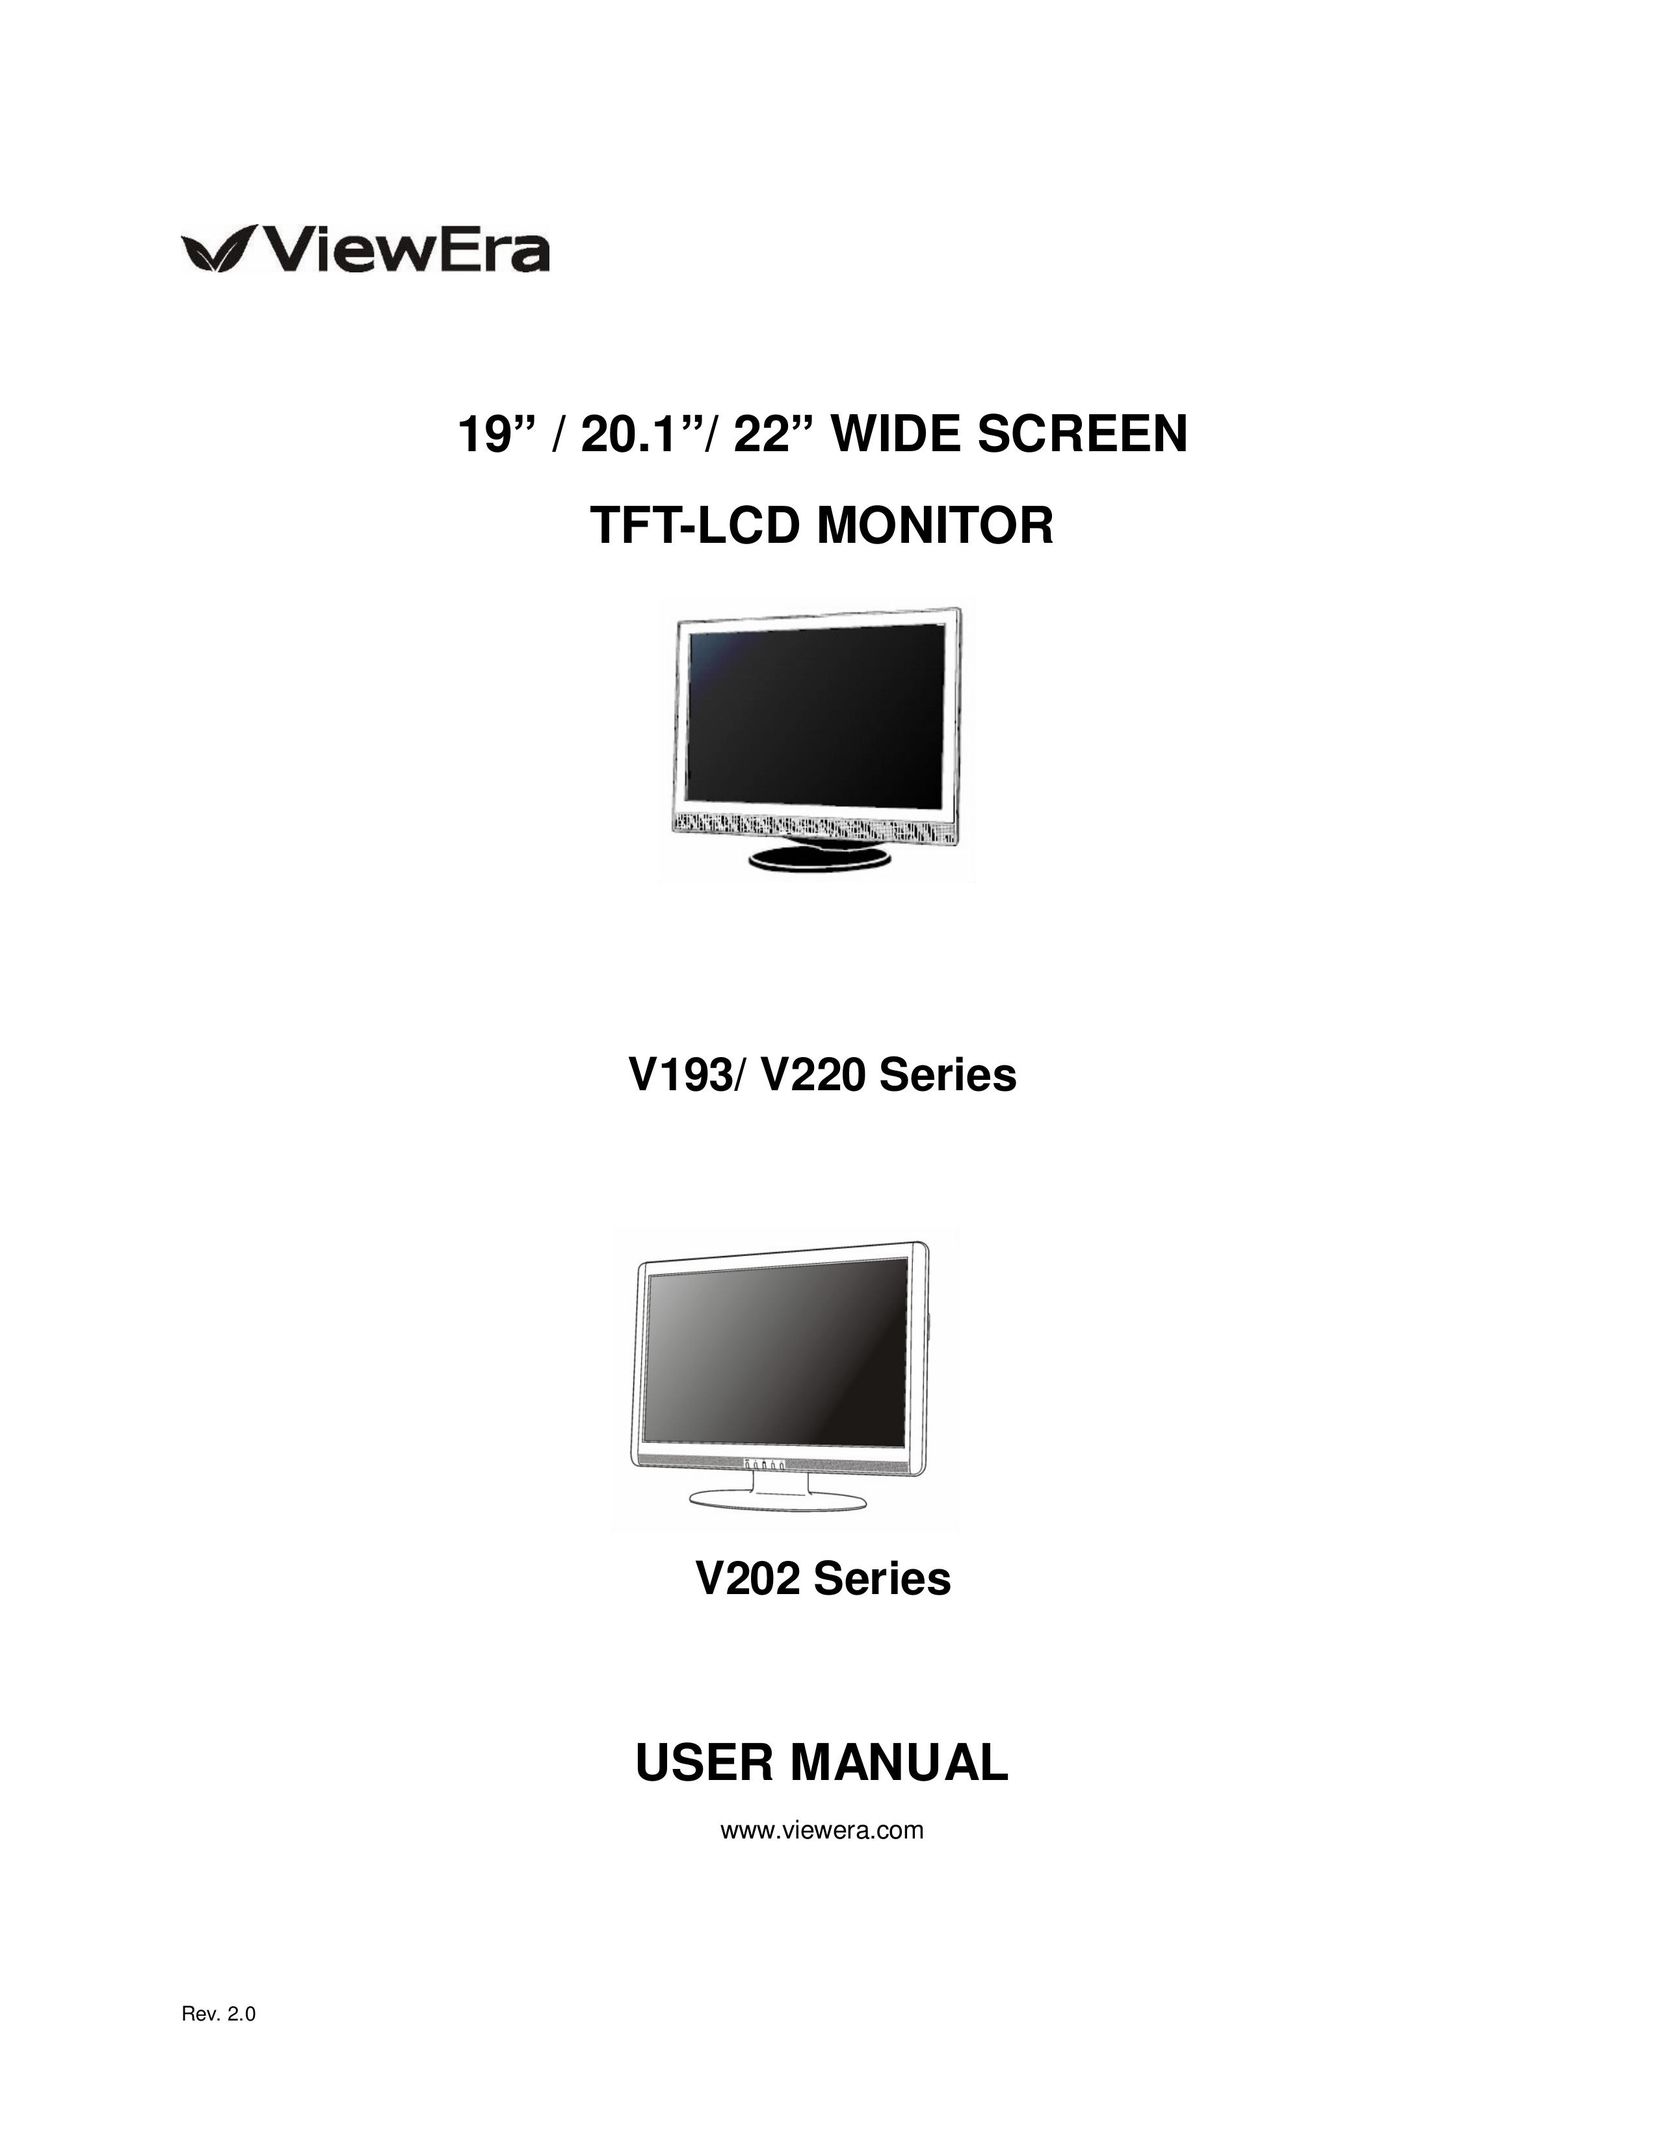 ViewEra V193 Flat Panel Television User Manual